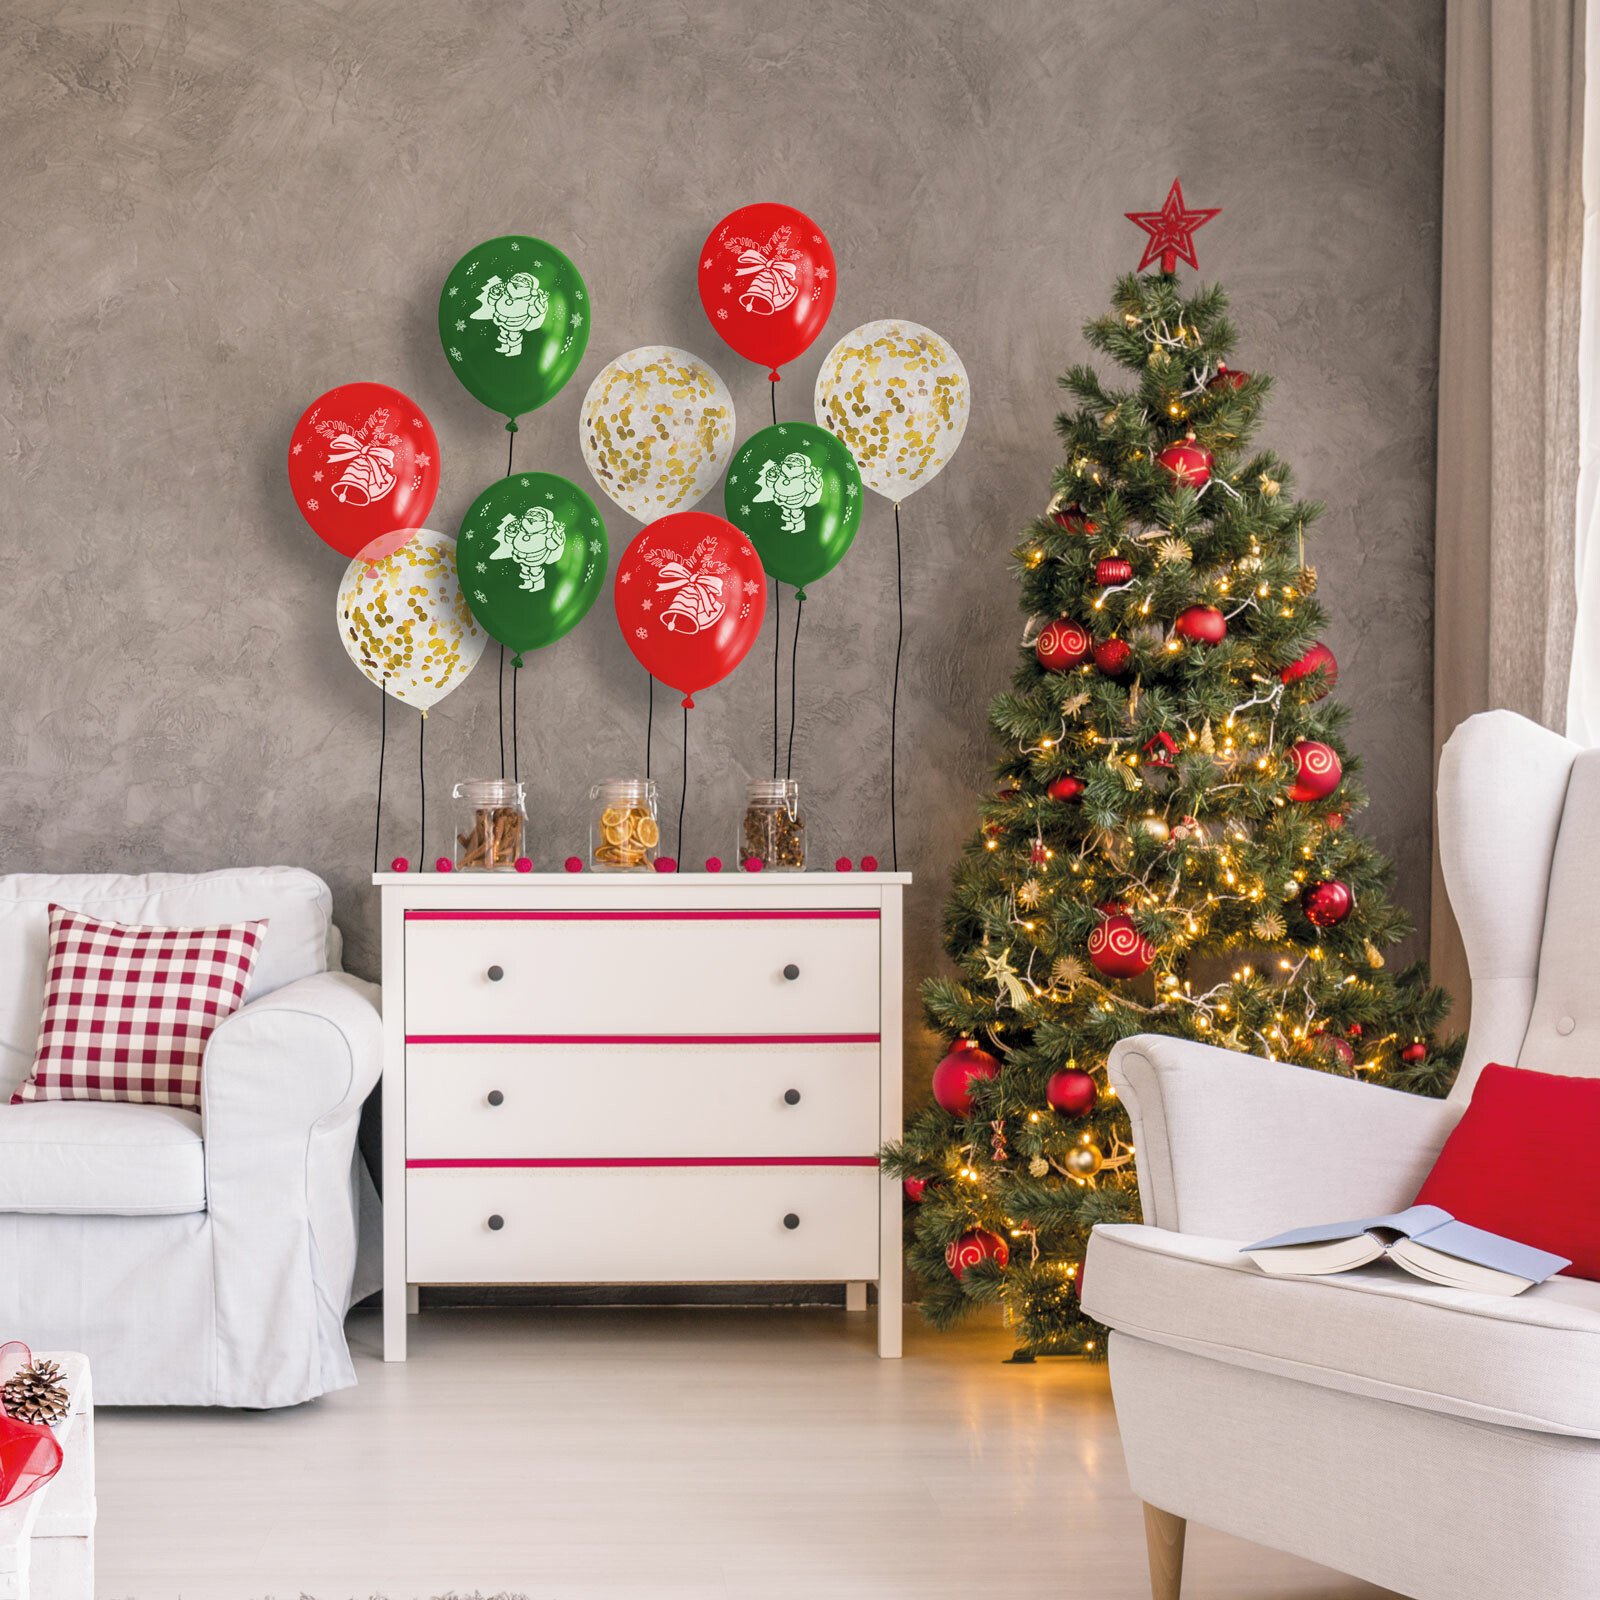 Set baloane - roșu, verde, auriu, cu motive de Crăciun - 12 piese / pachet thumb